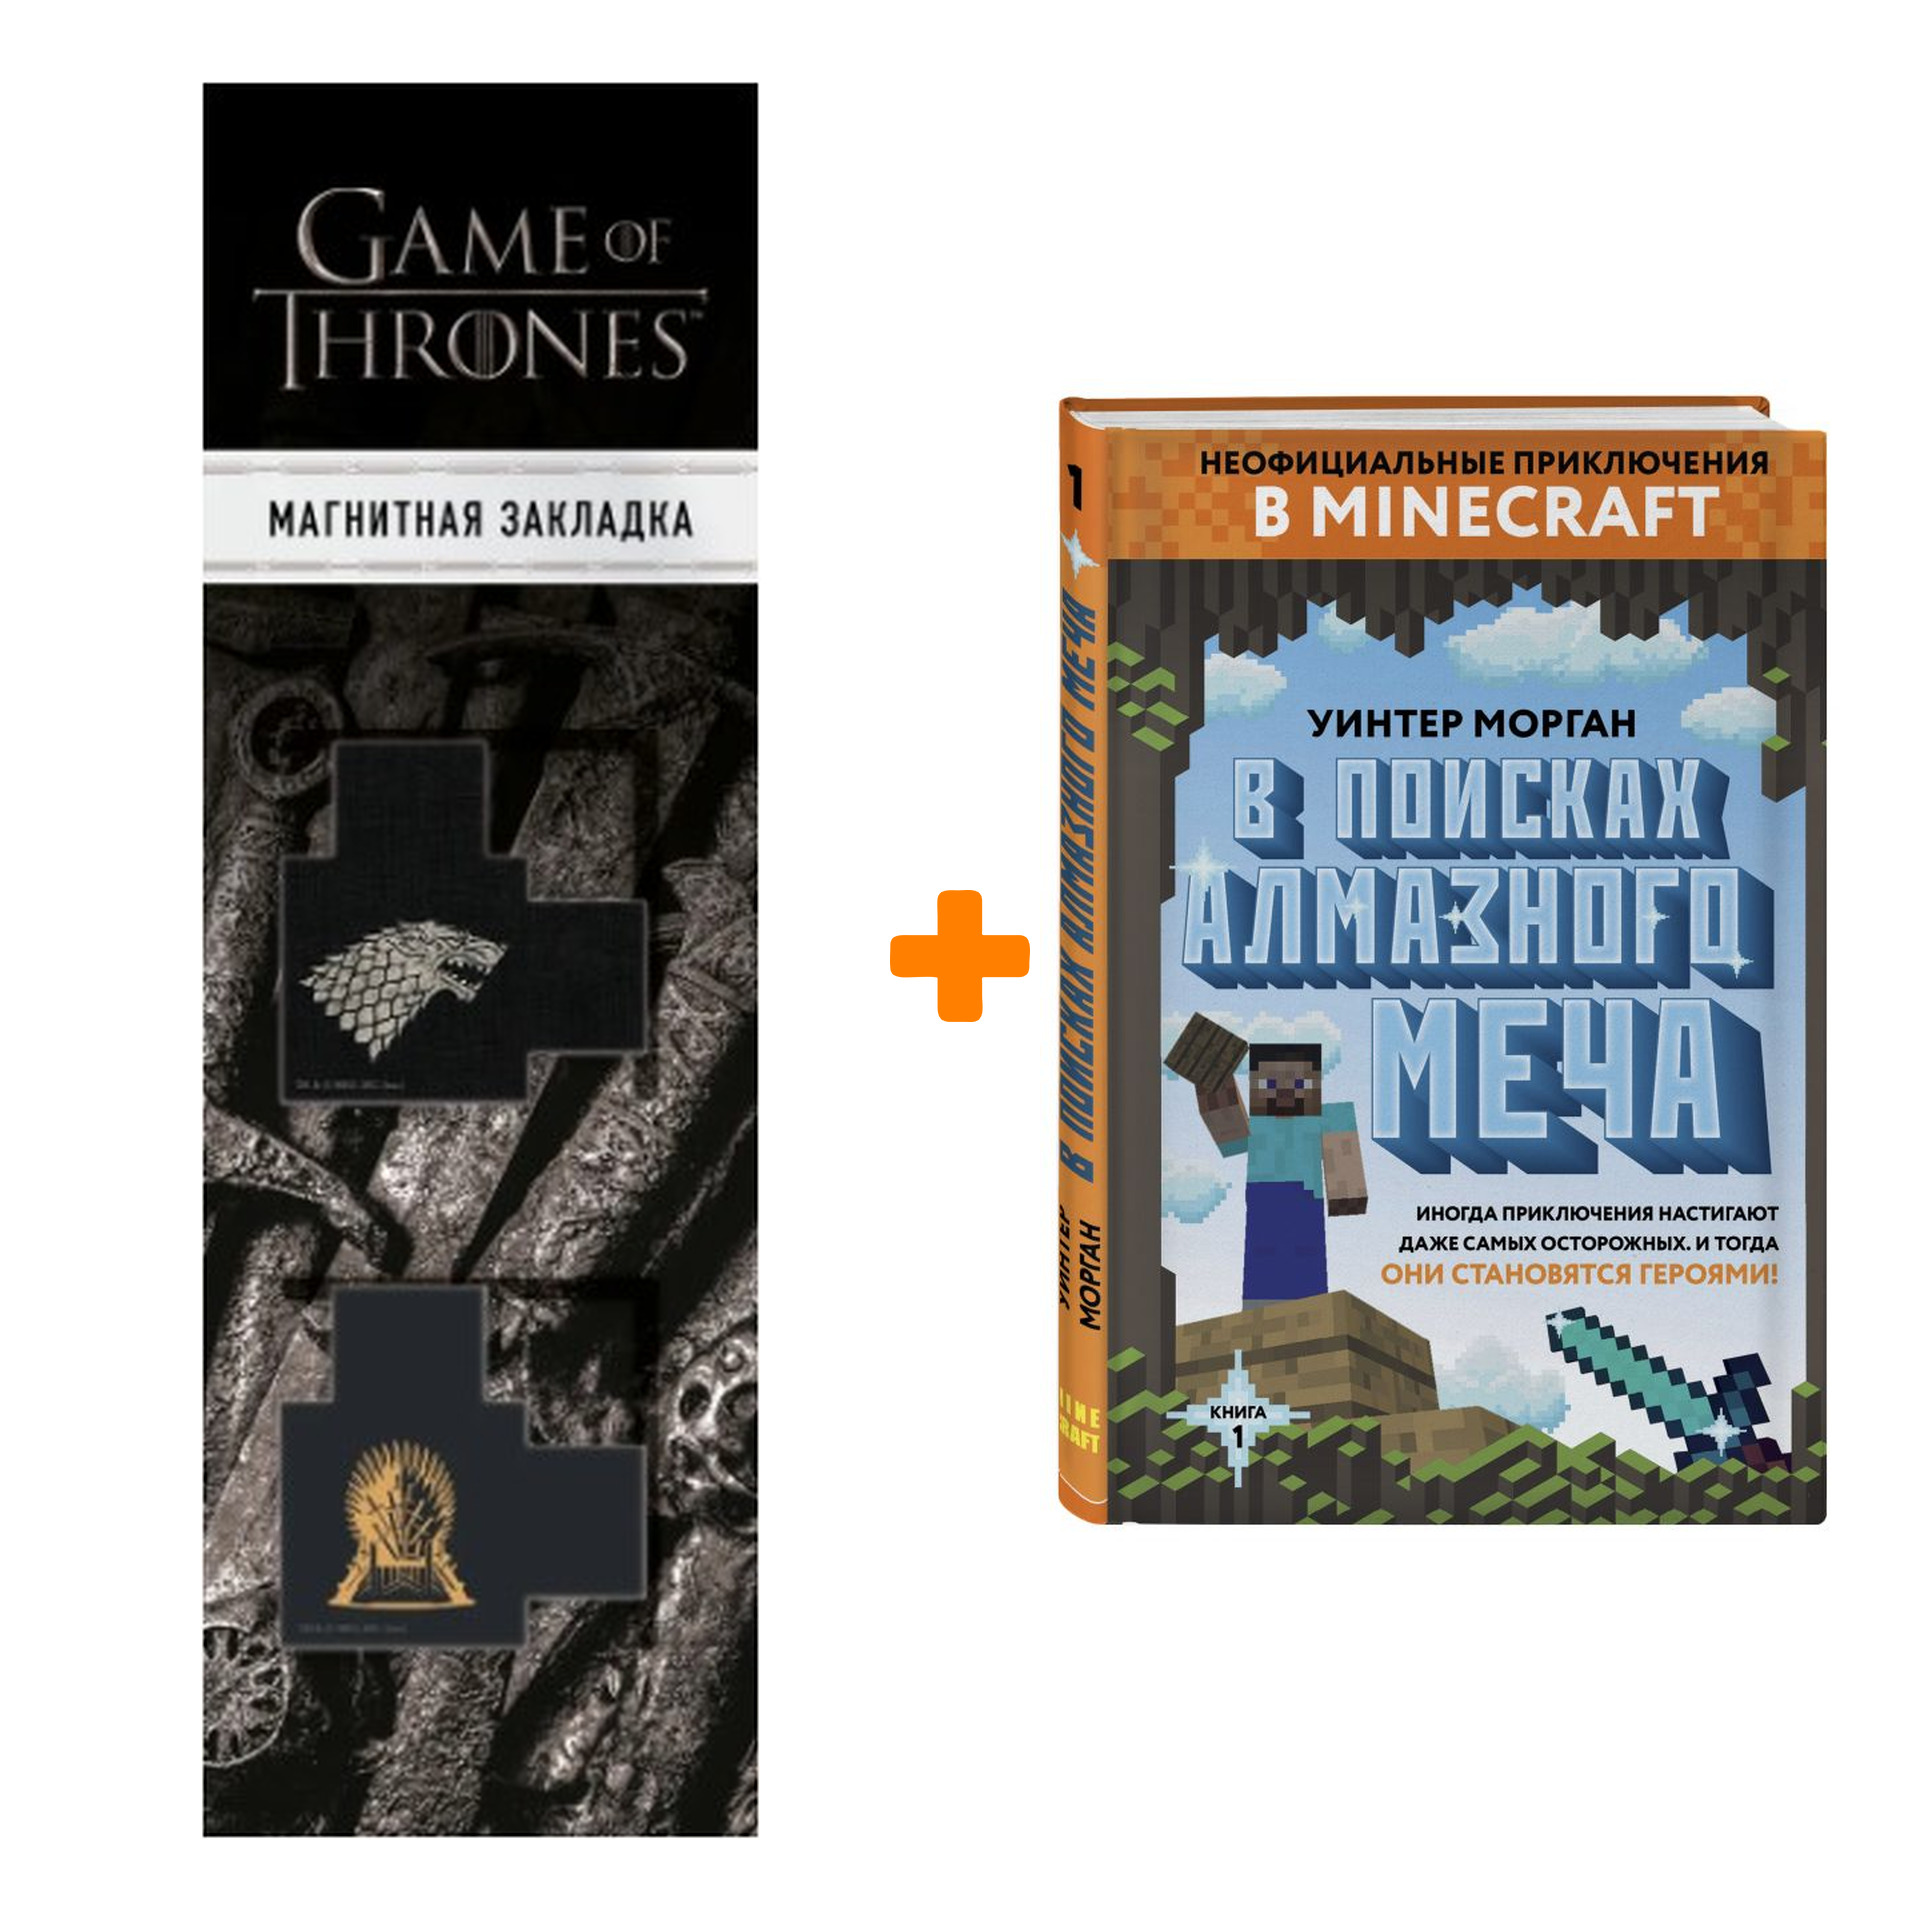 Набор Неофициальные приключения в Minecraft В поисках алмазного меча Книга 1 + Закладка Game Of Thrones Трон и Герб Старков магнитная 2-Pack